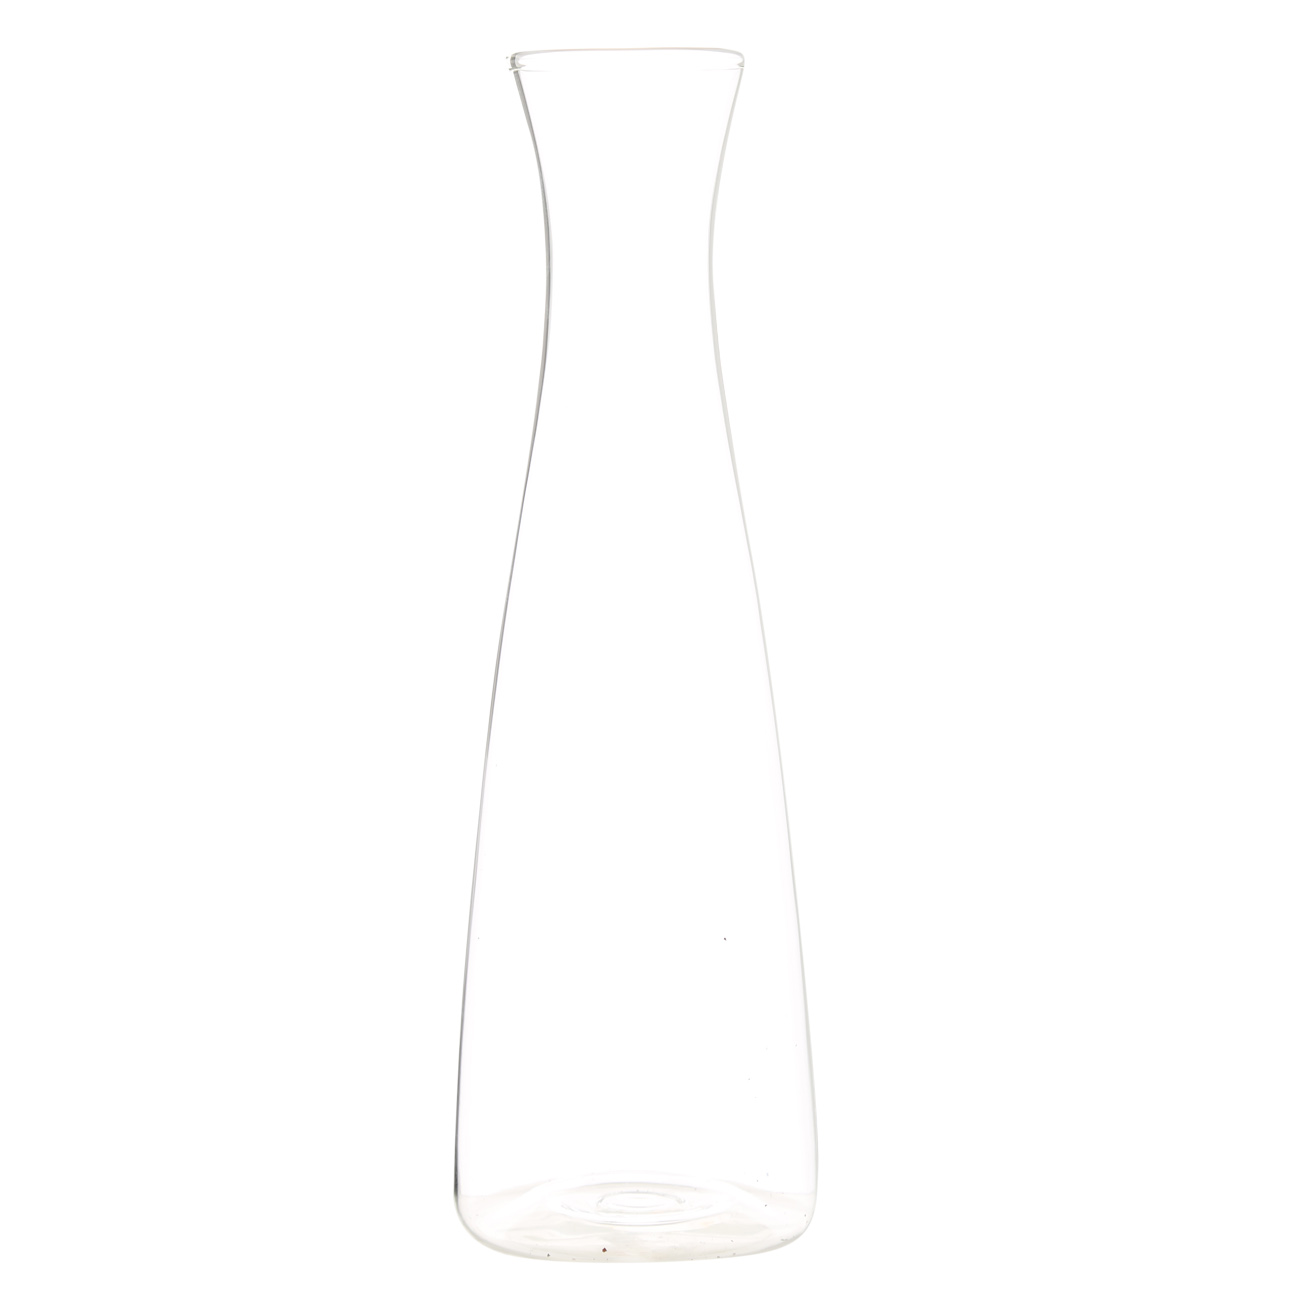 Бутылка для масла или уксуса, 500 мл, с дозатором, стекло/силикон, Refined изображение № 4